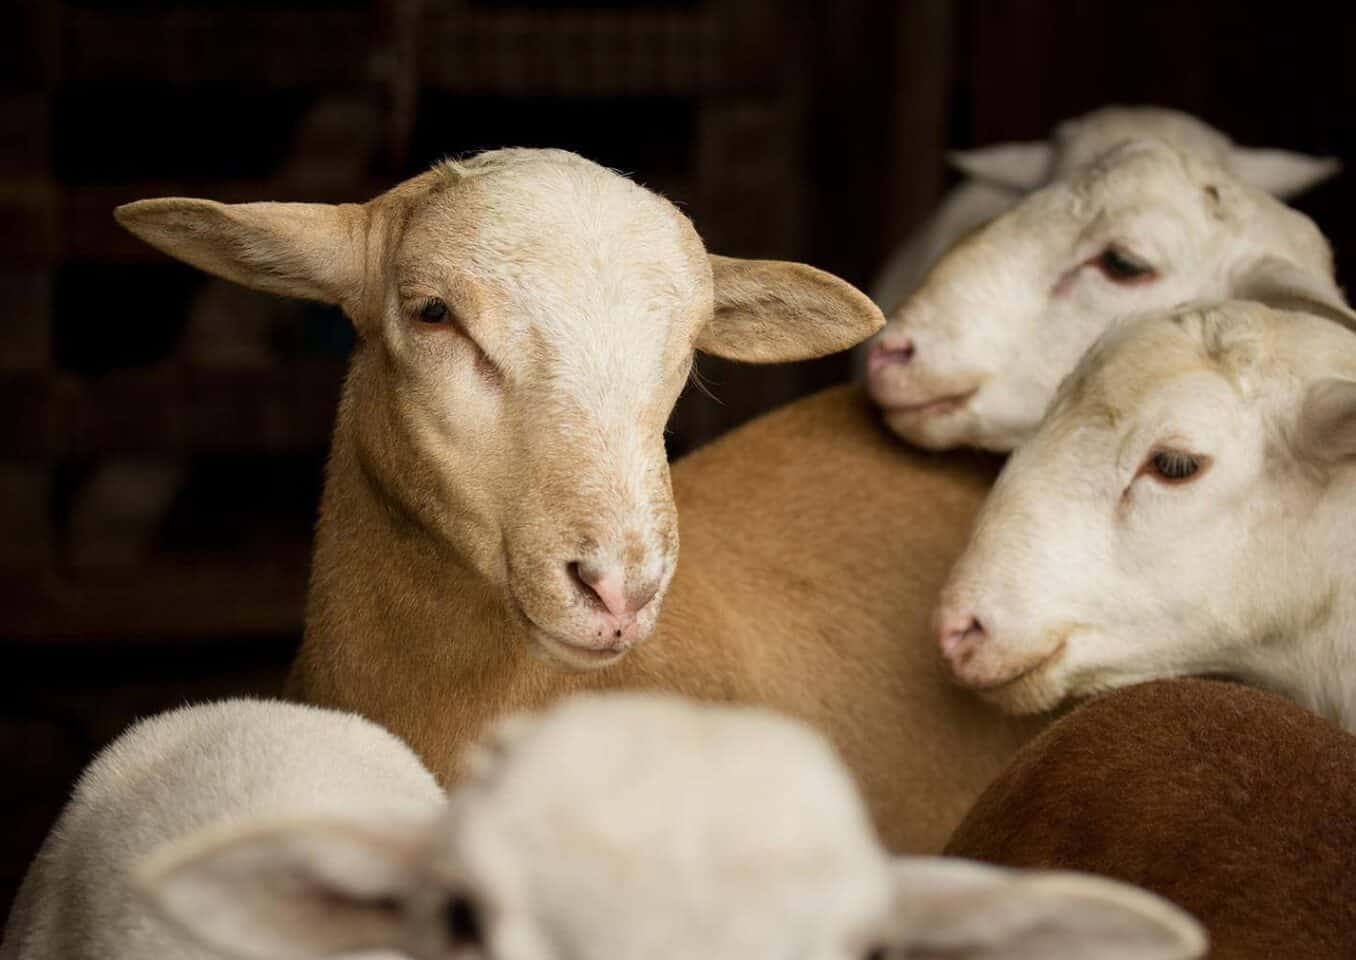 Katahdin sheeps